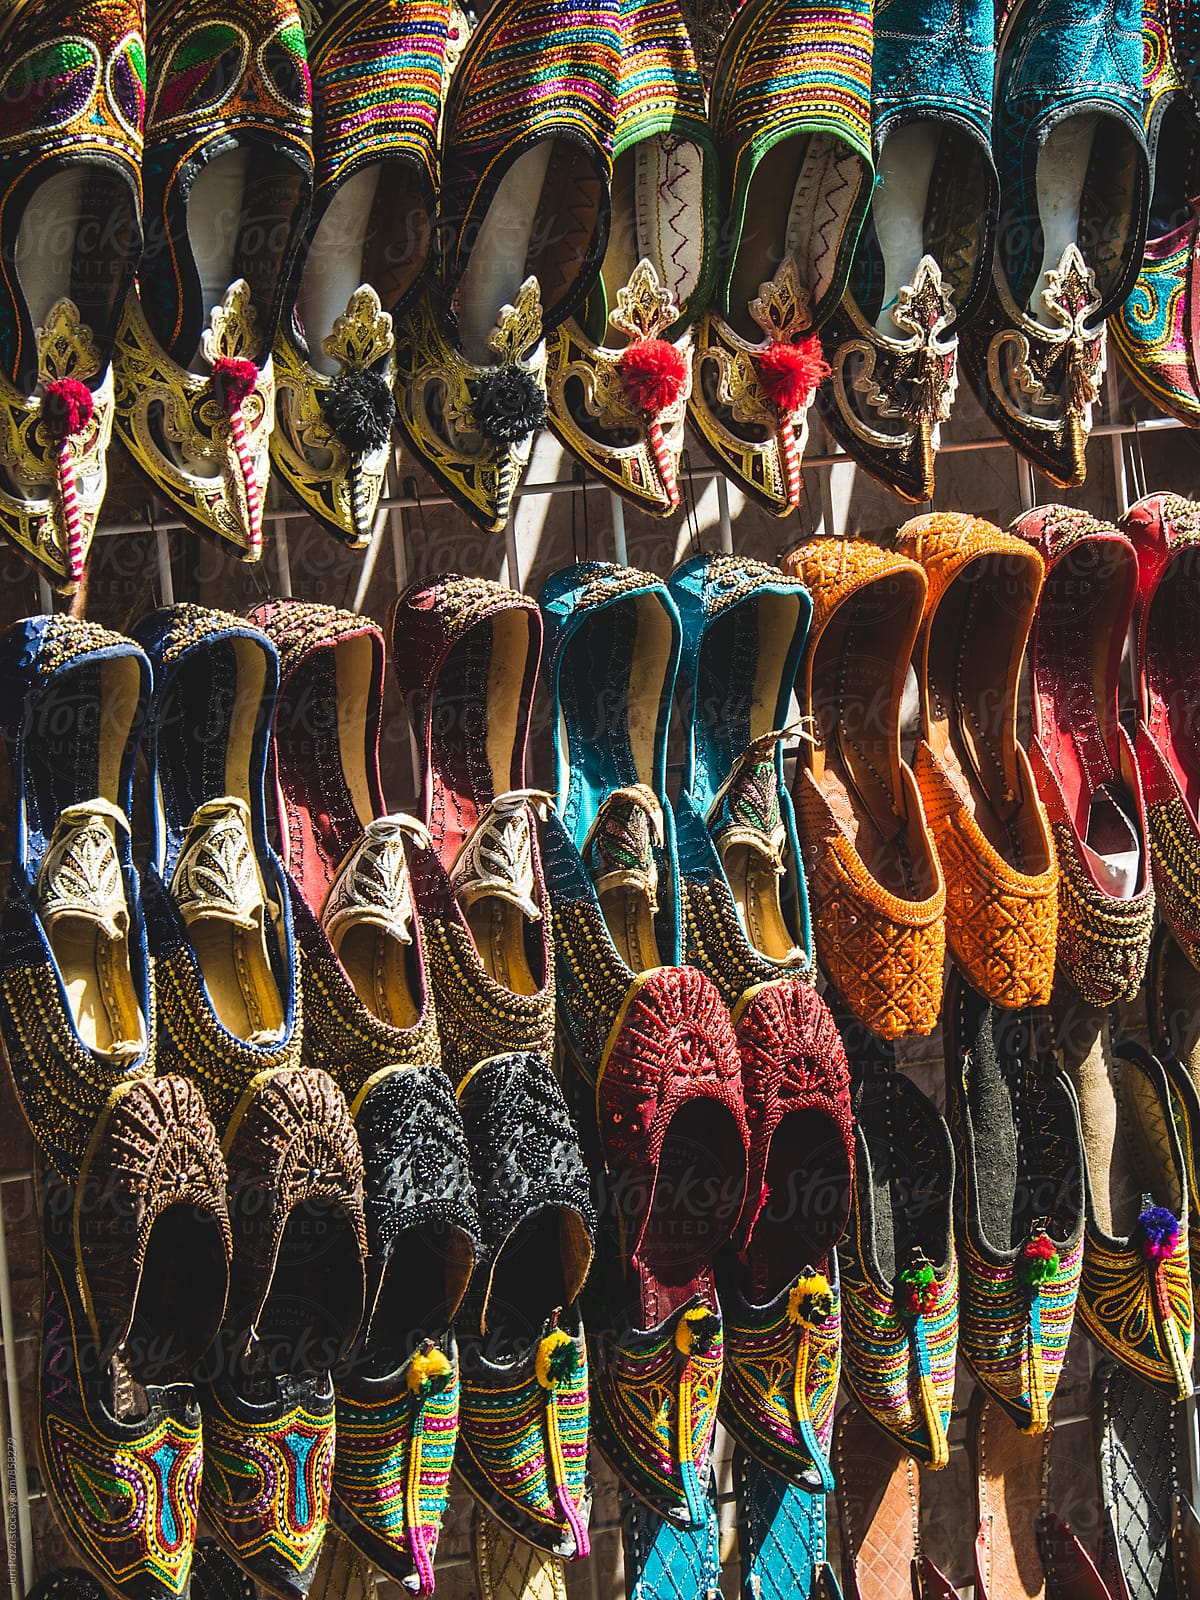 colorful shoes in souk Dubai